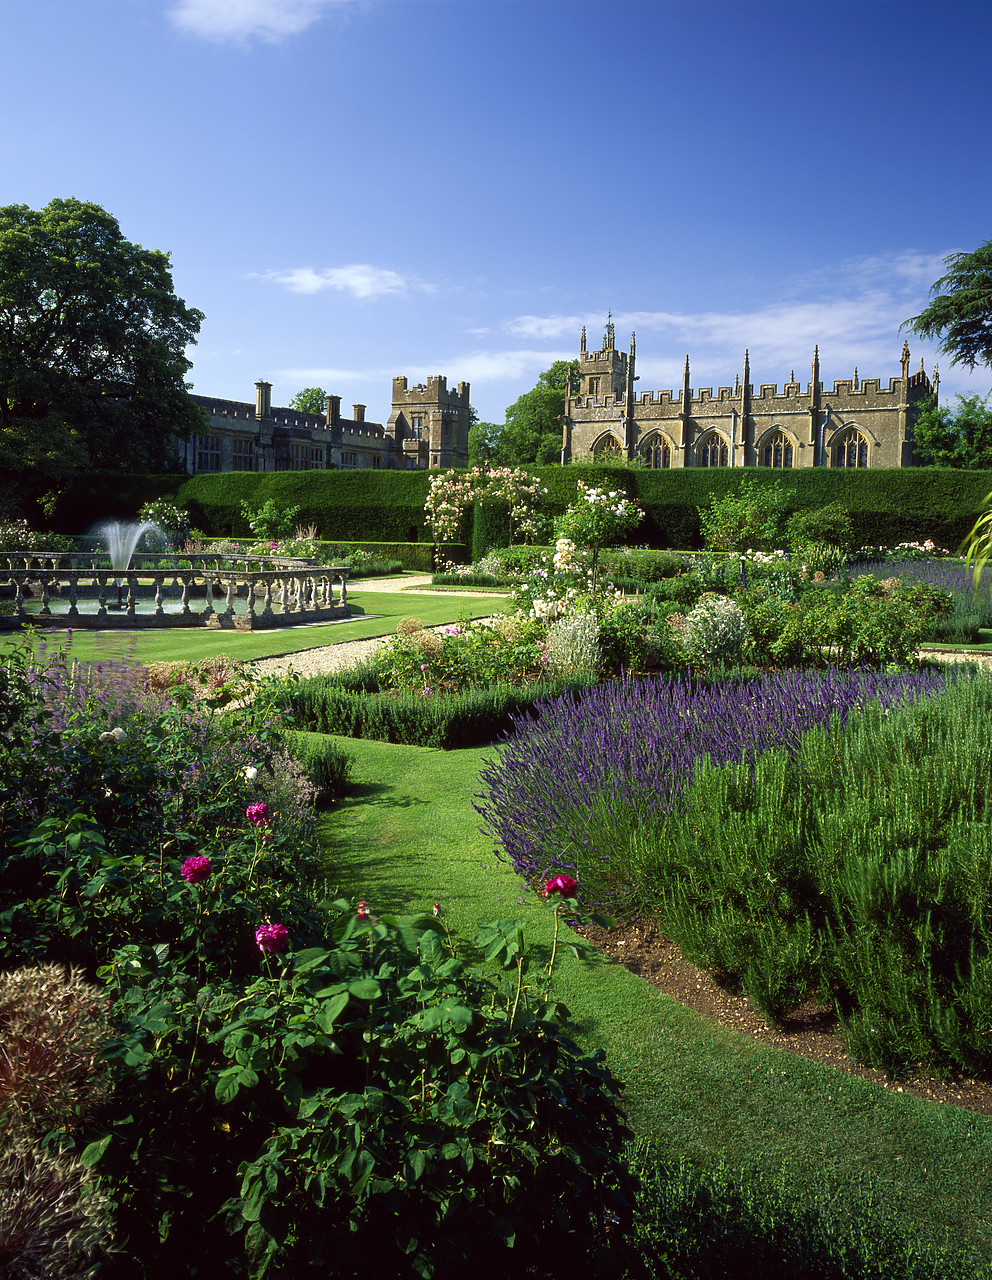 #990417-5 - Queen's Garden, Sudeley Castle, Winchcombe, Gloucestershire, England